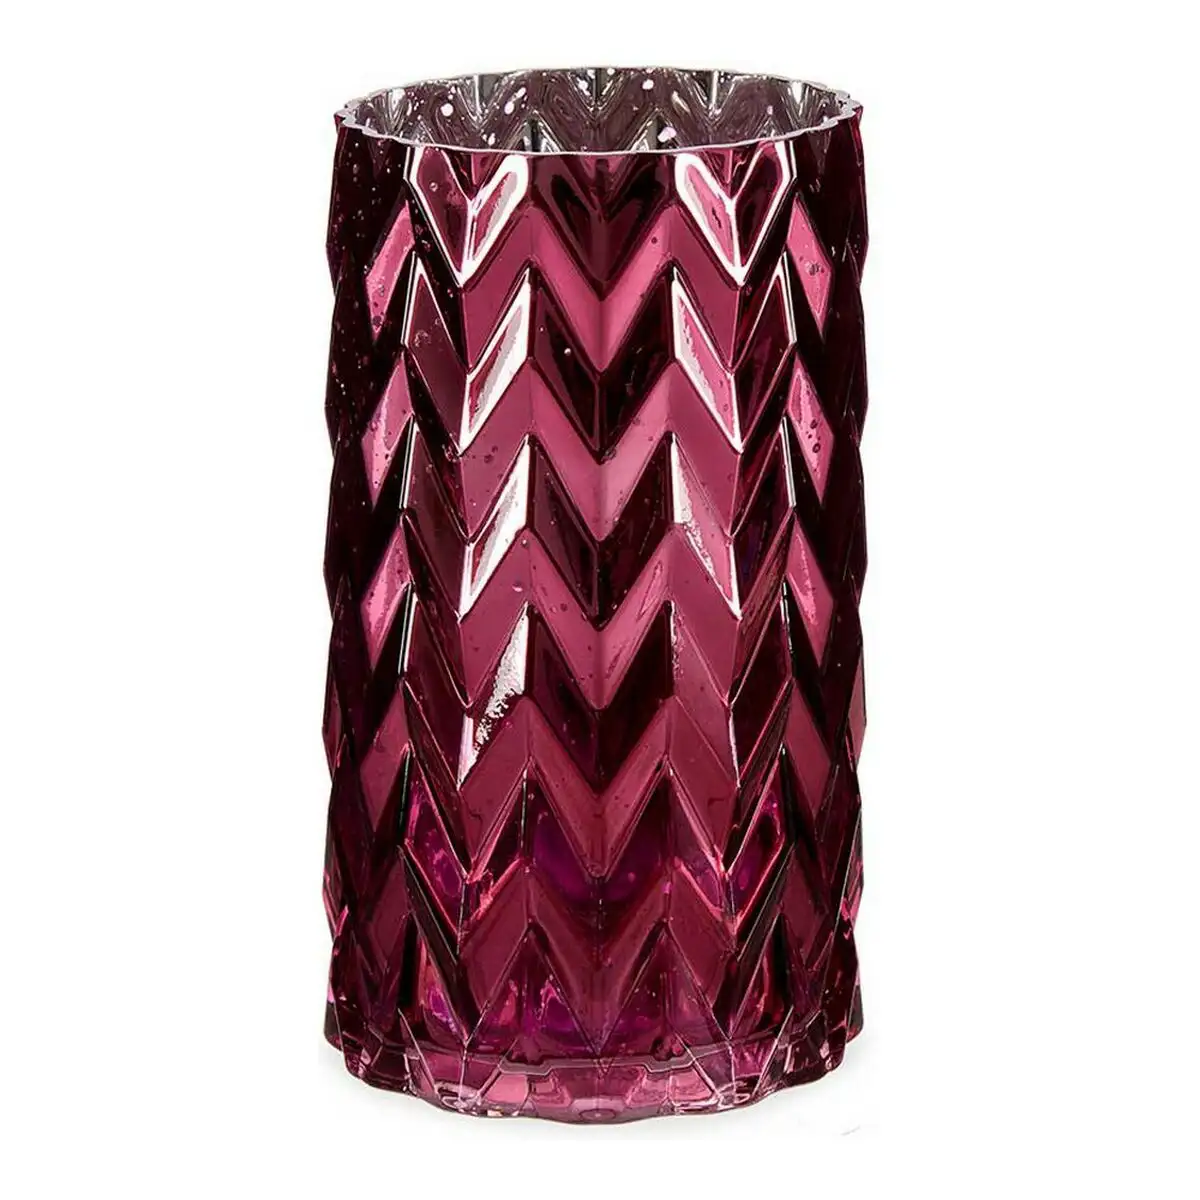 Vase rose taille epis verre 11 3 x 19 5 x 11 3 cm _9646. DIAYTAR SENEGAL - L'Art de Trouver ce que Vous Aimez. Plongez dans notre assortiment varié et choisissez parmi des produits qui reflètent votre style et répondent à vos besoins.